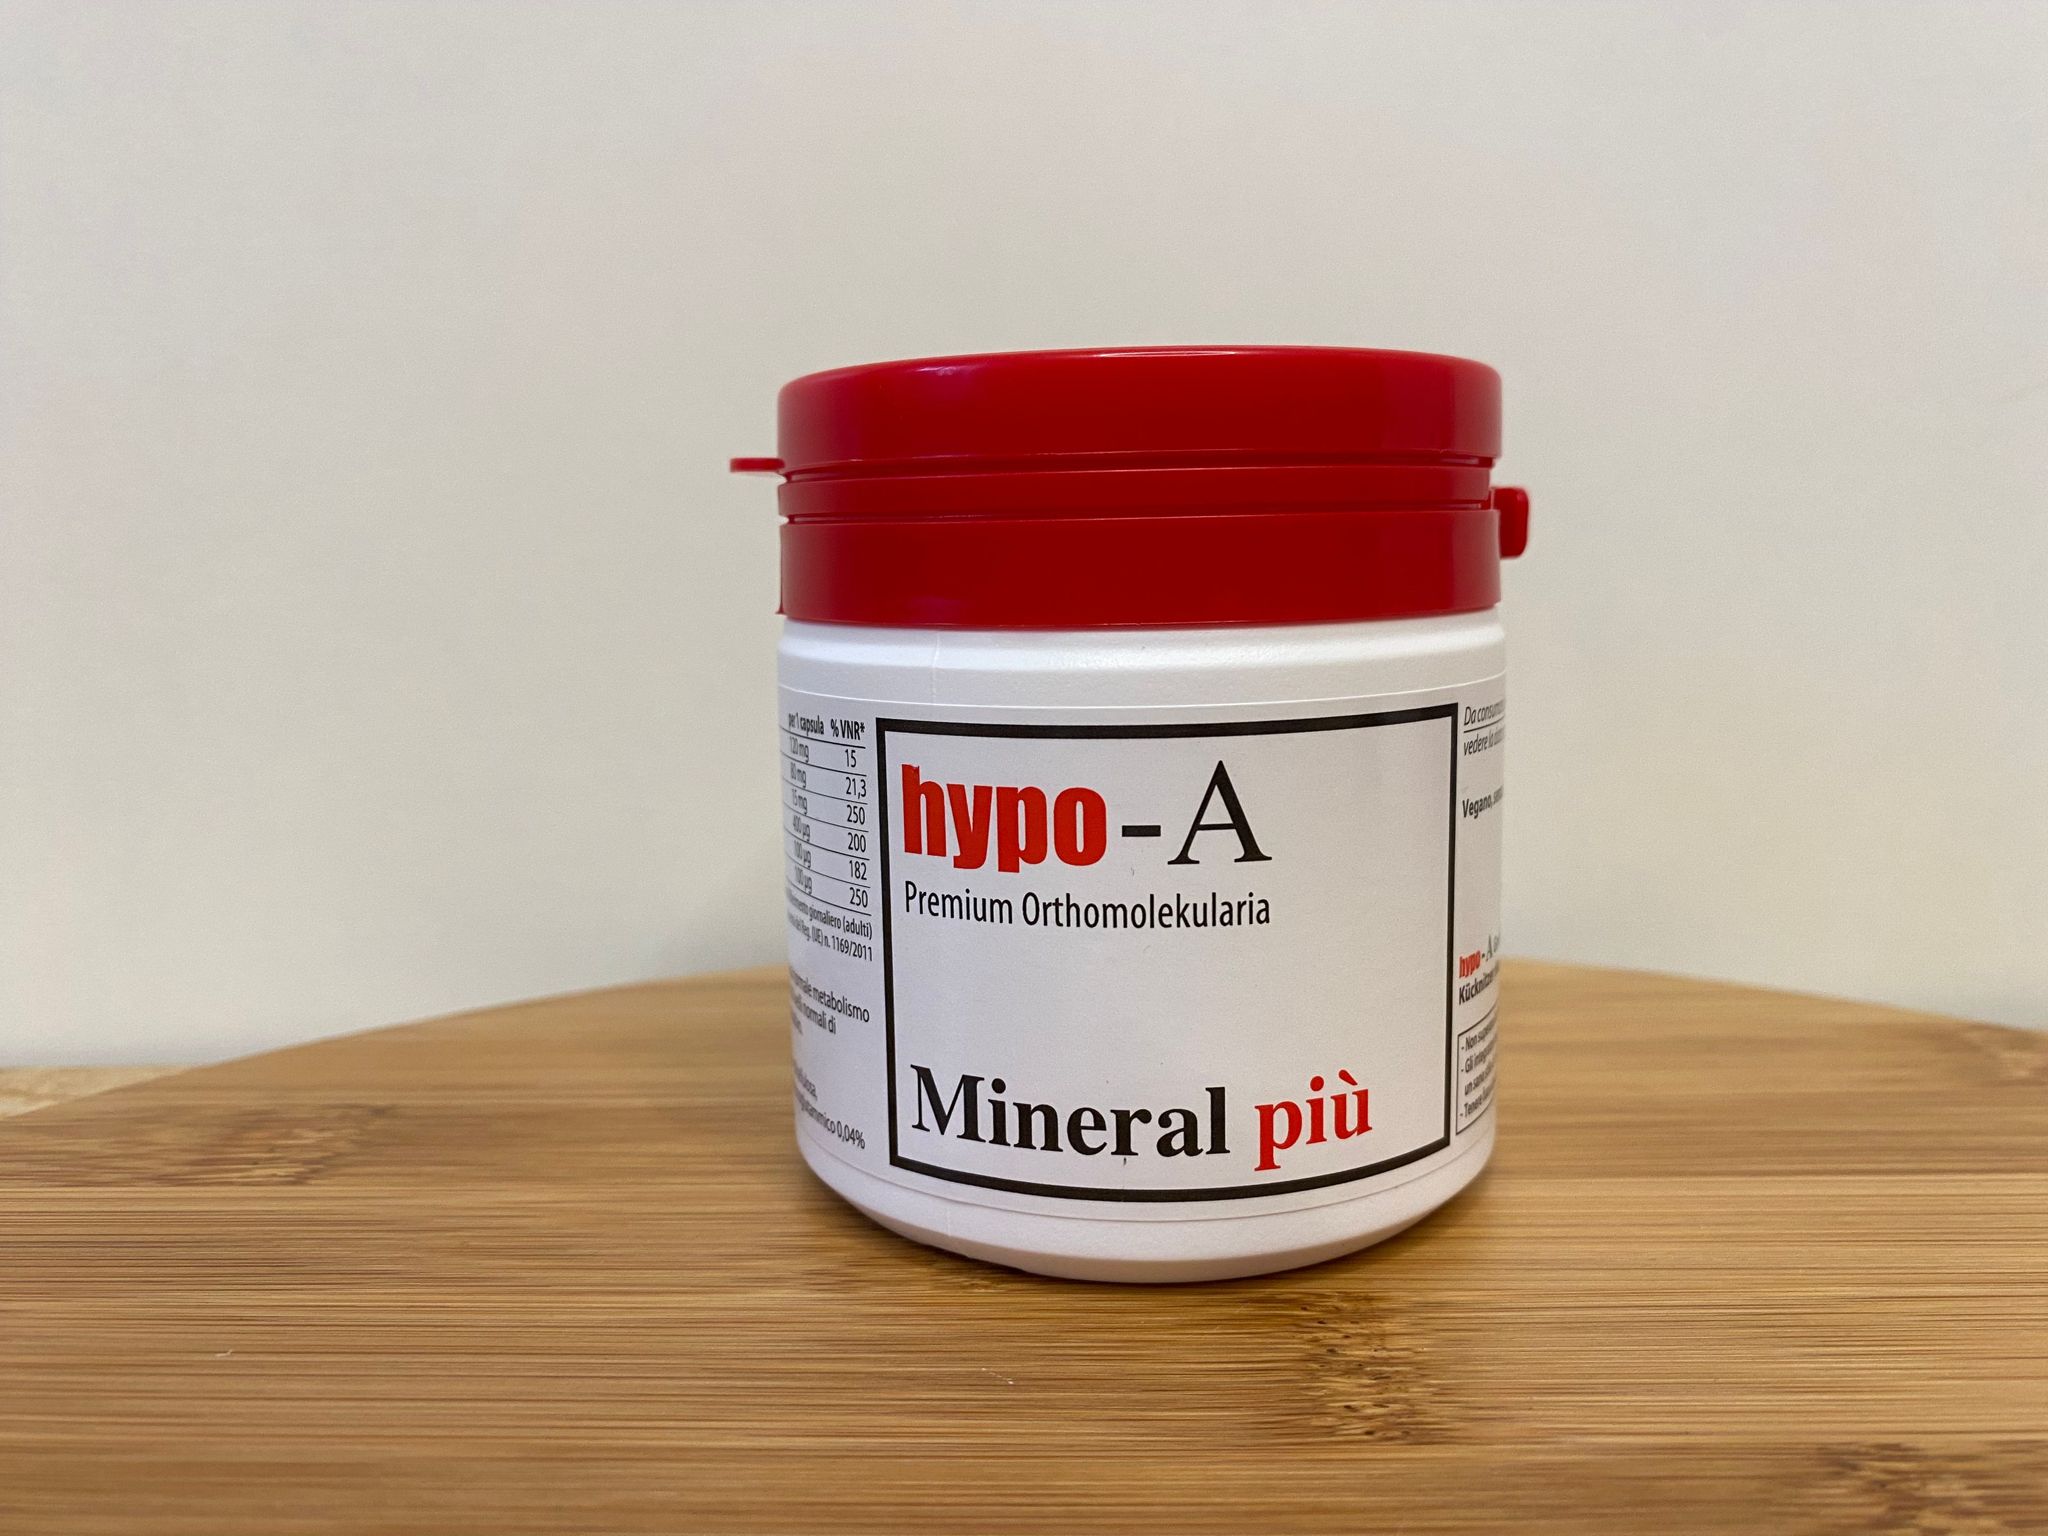 Hypo A: Mineral più